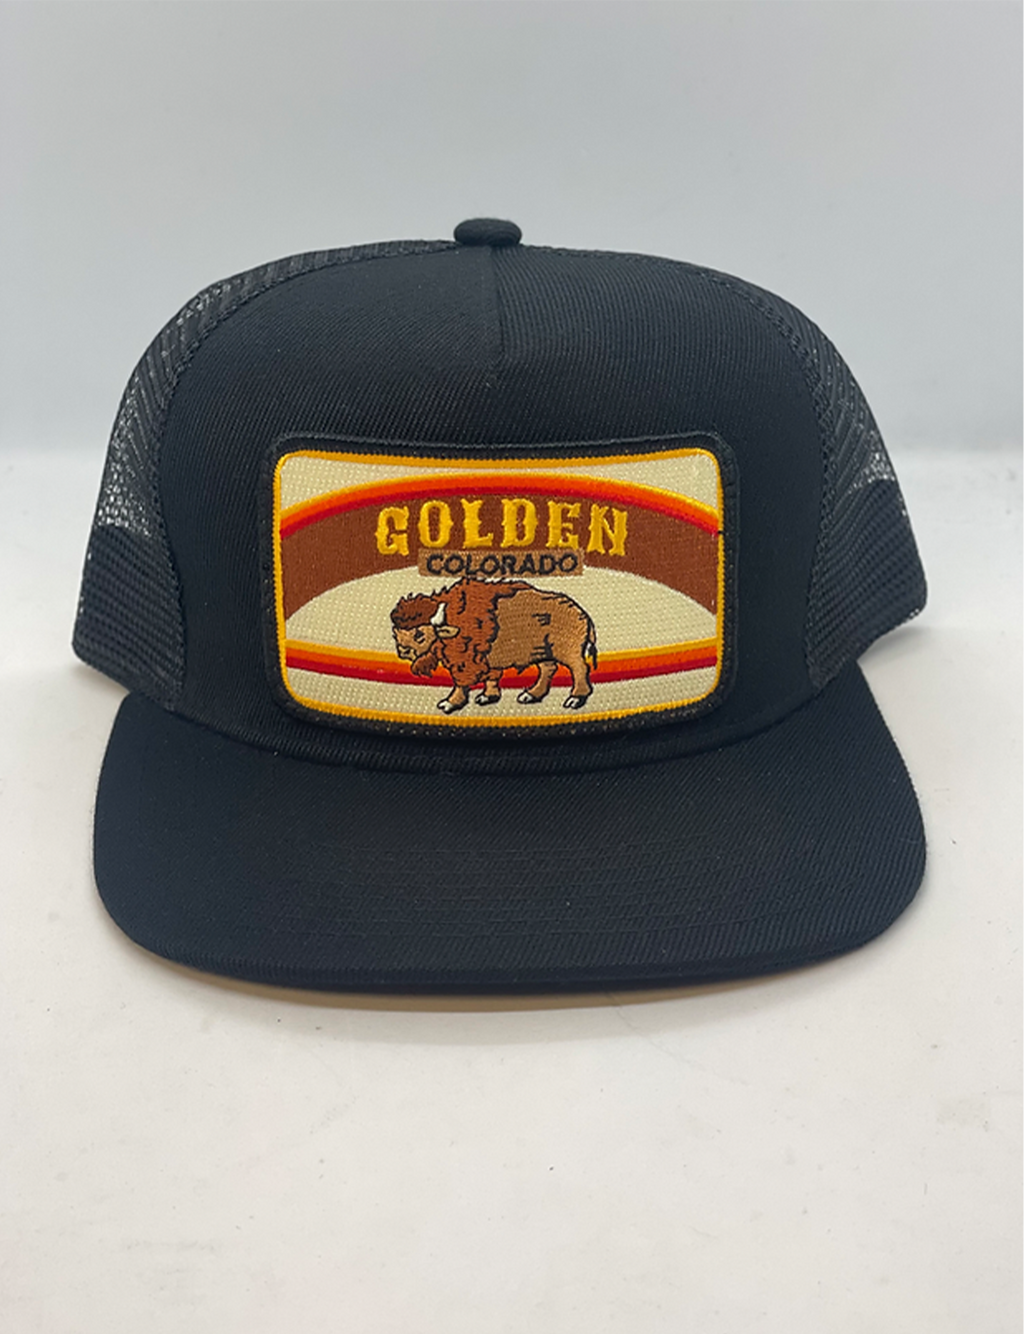 Trucker Hat, Golden Colorado